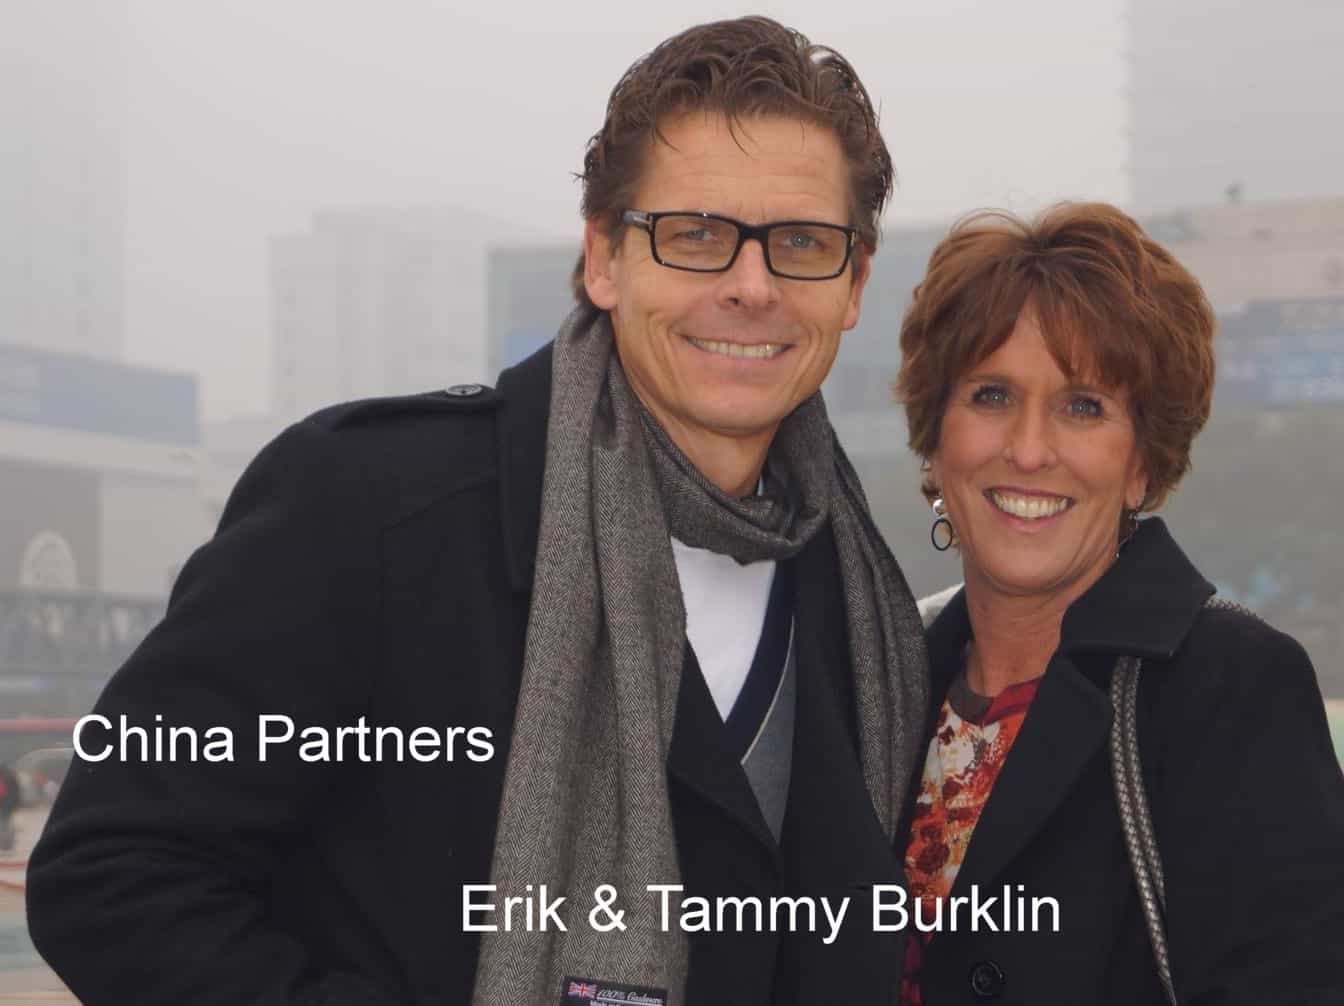 Erik & Tammy Burklin